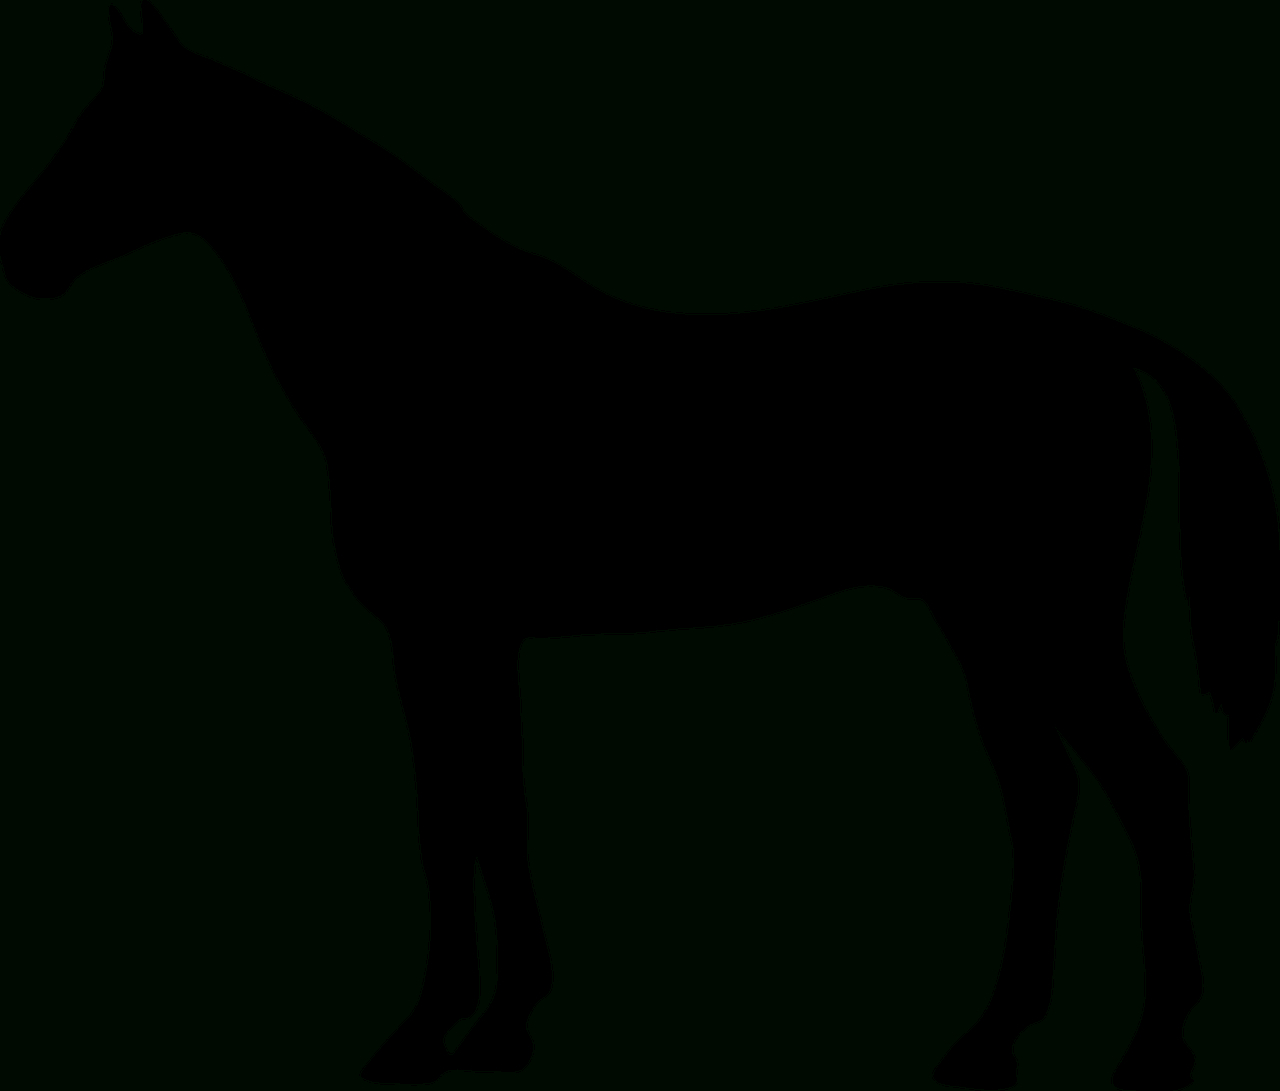 Kostenloses Bild Auf Pixabay - Das Pferd, Konik, Tier, Geht ganzes Pferde Schablonen